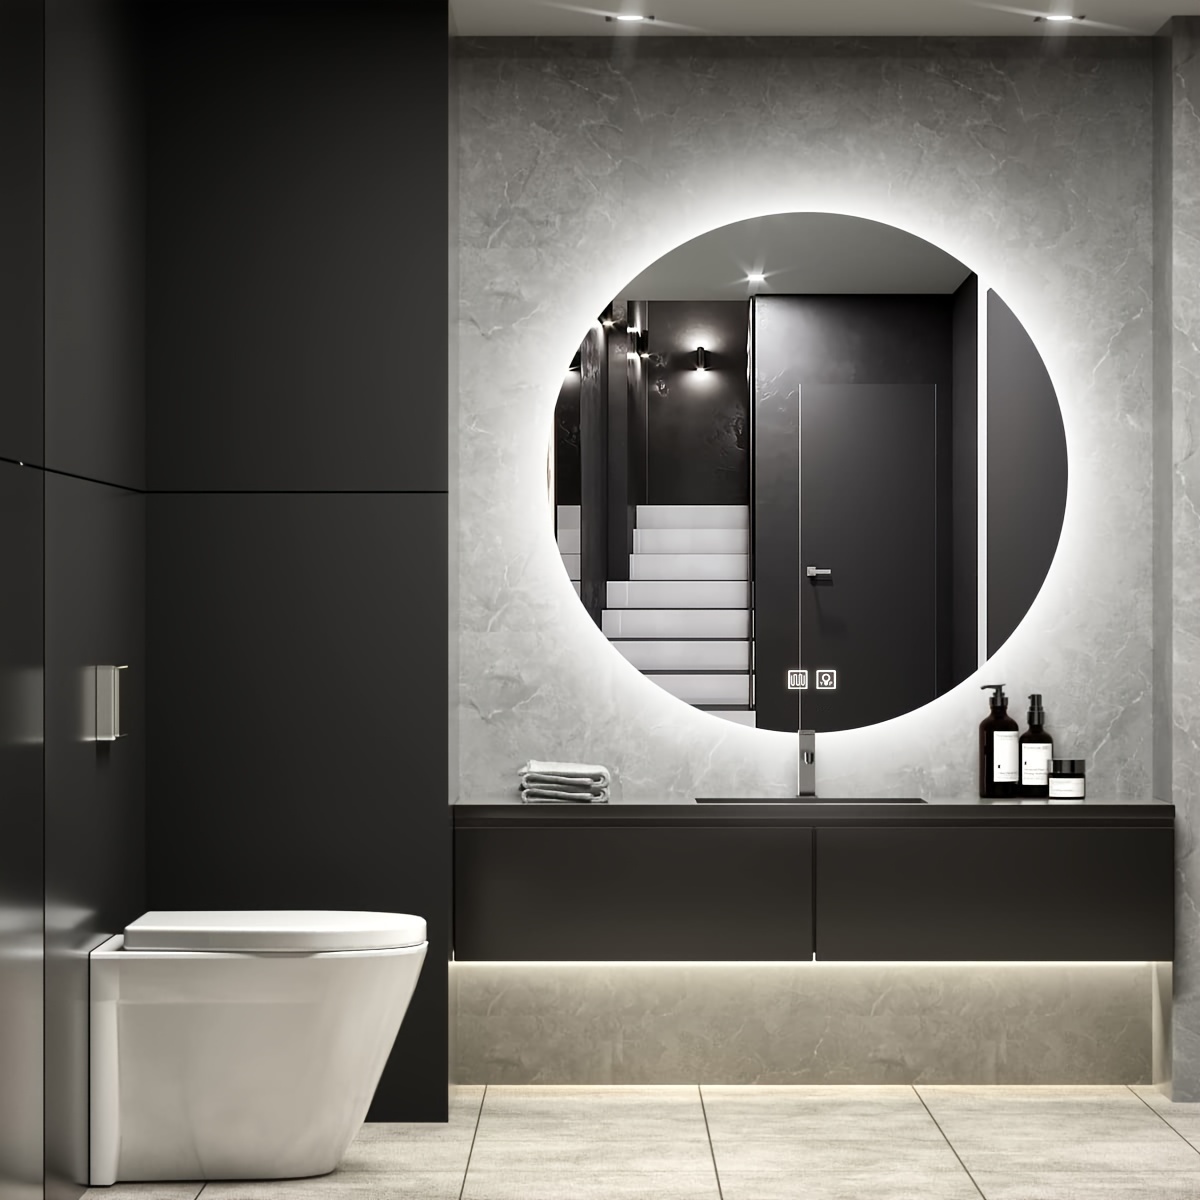  MIRPLUS Espejo de baño de 32 x 24 pulgadas para pared, espejo  de baño LED con luz, espejo de baño rectangular con amplificador facial,  impermeable IP44, espejos antivaho para baño, luz